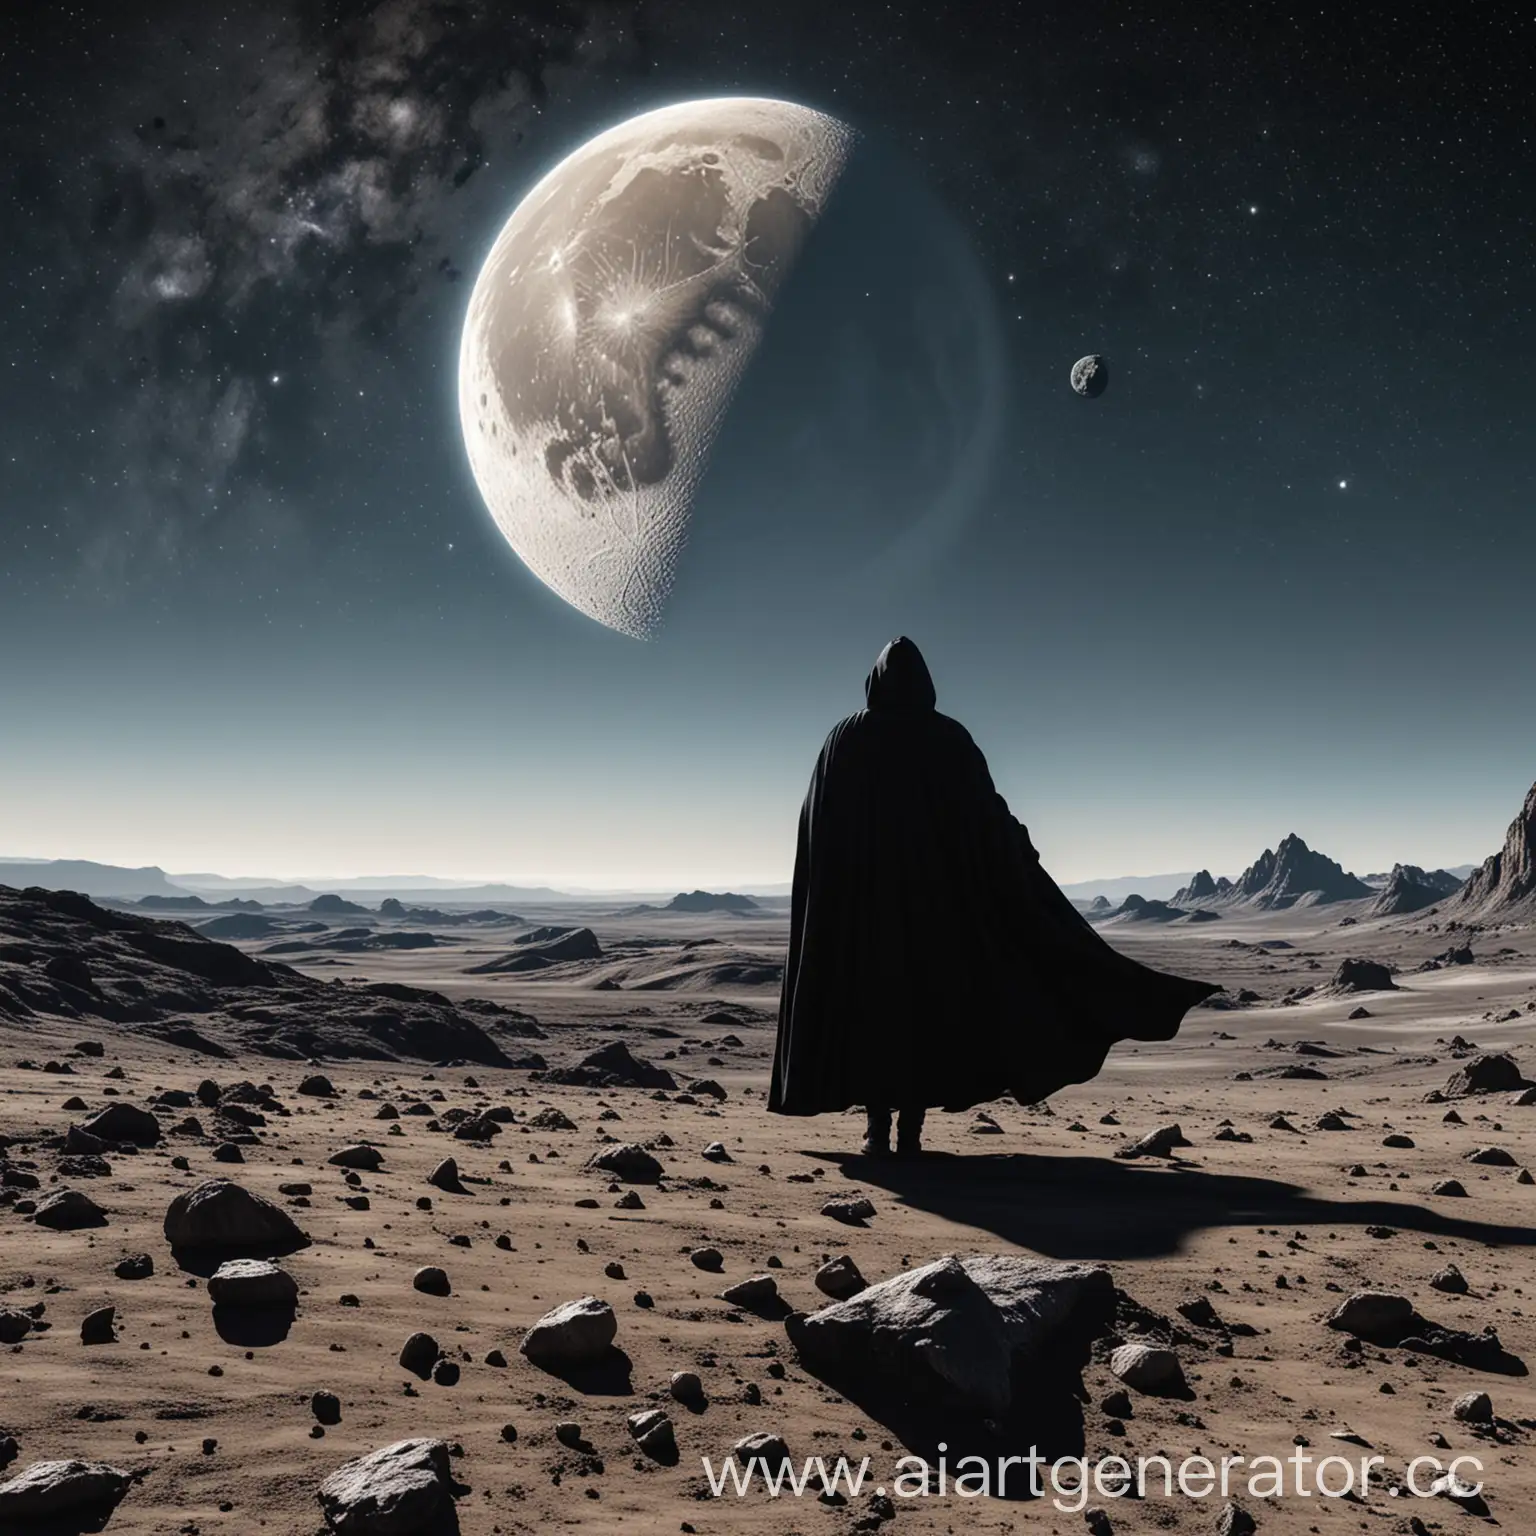 Вид луны на землю, на луне стоит человек в чёрном плаще, на фоне земли с левой и правой стороны летят по одному метеориту